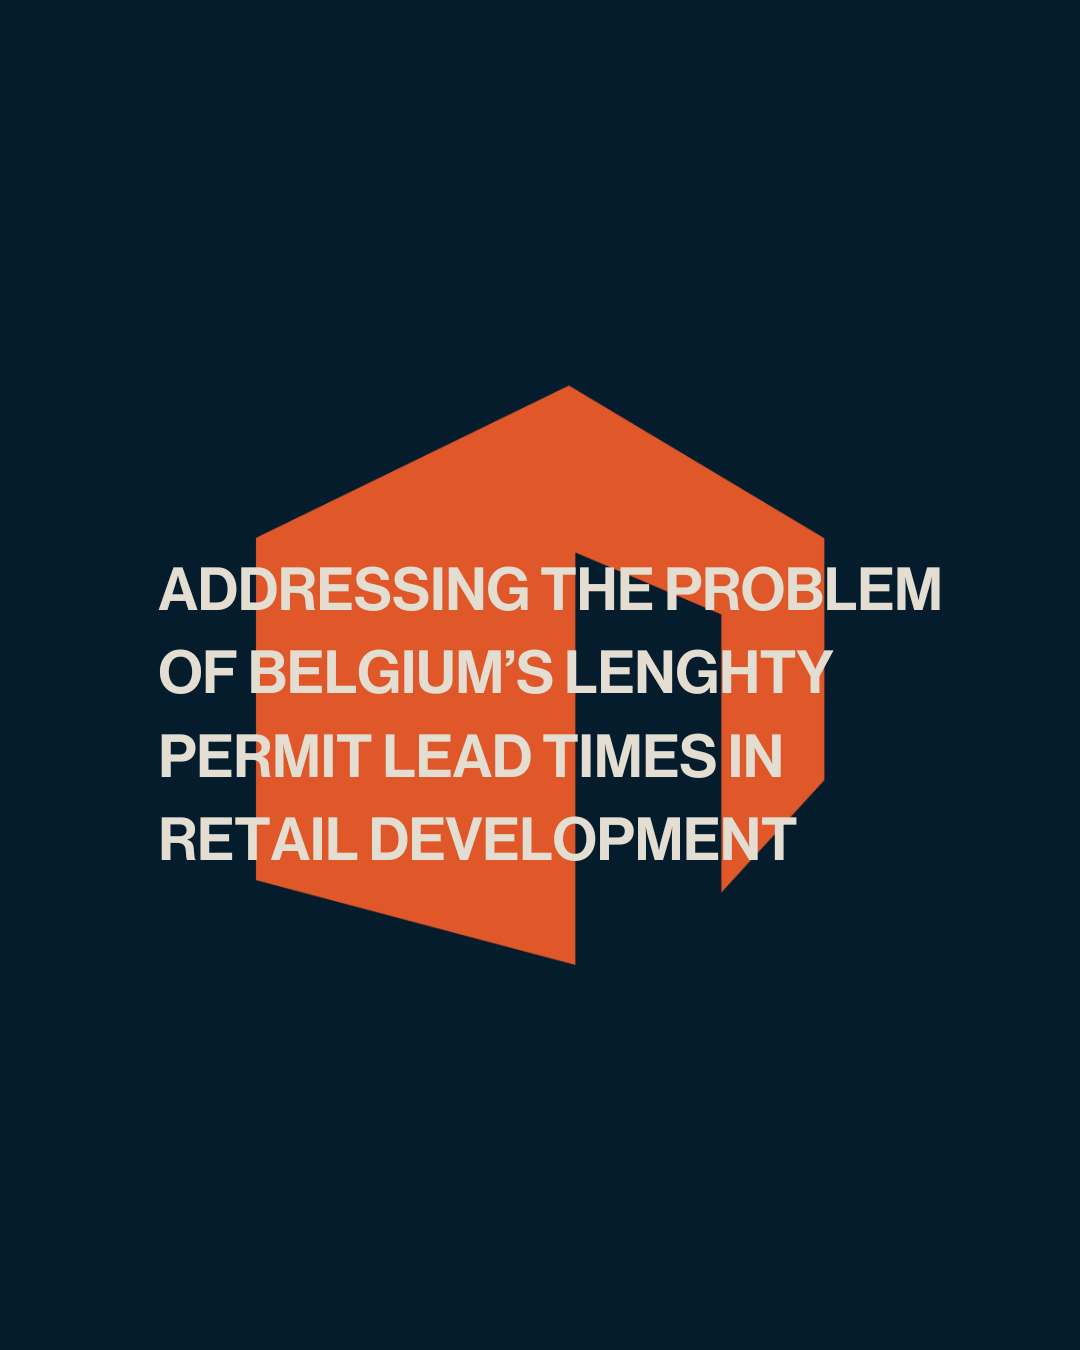 Résoudre le problème des longs délais d'obtention des permis en Belgique dans le domaine de la promotion immobilière